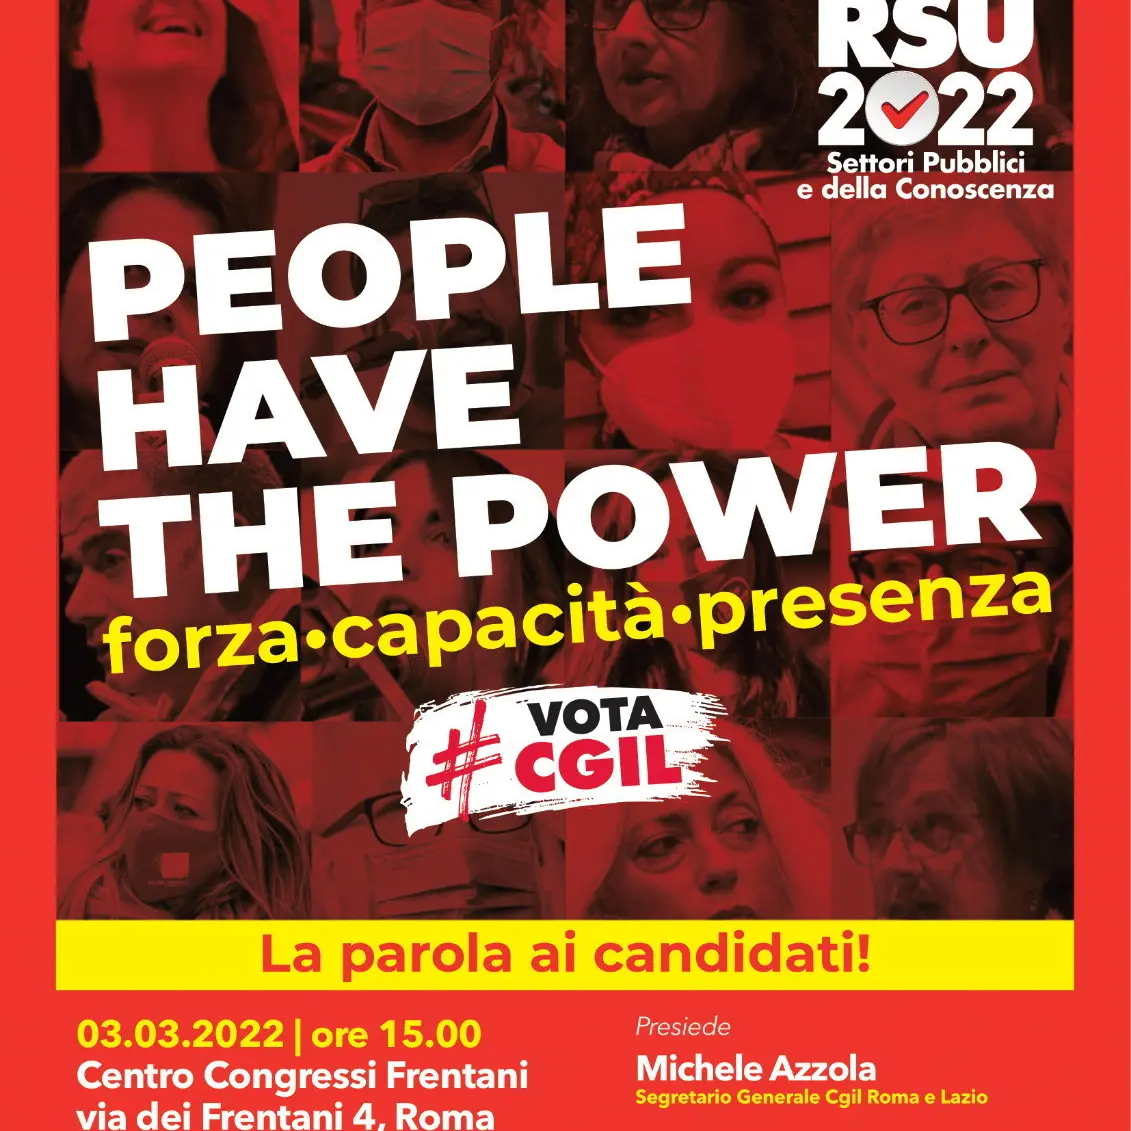 Rsu22: il 3 marzo iniziativa FP e FLC CGIL ‘People have the power’ con Landini